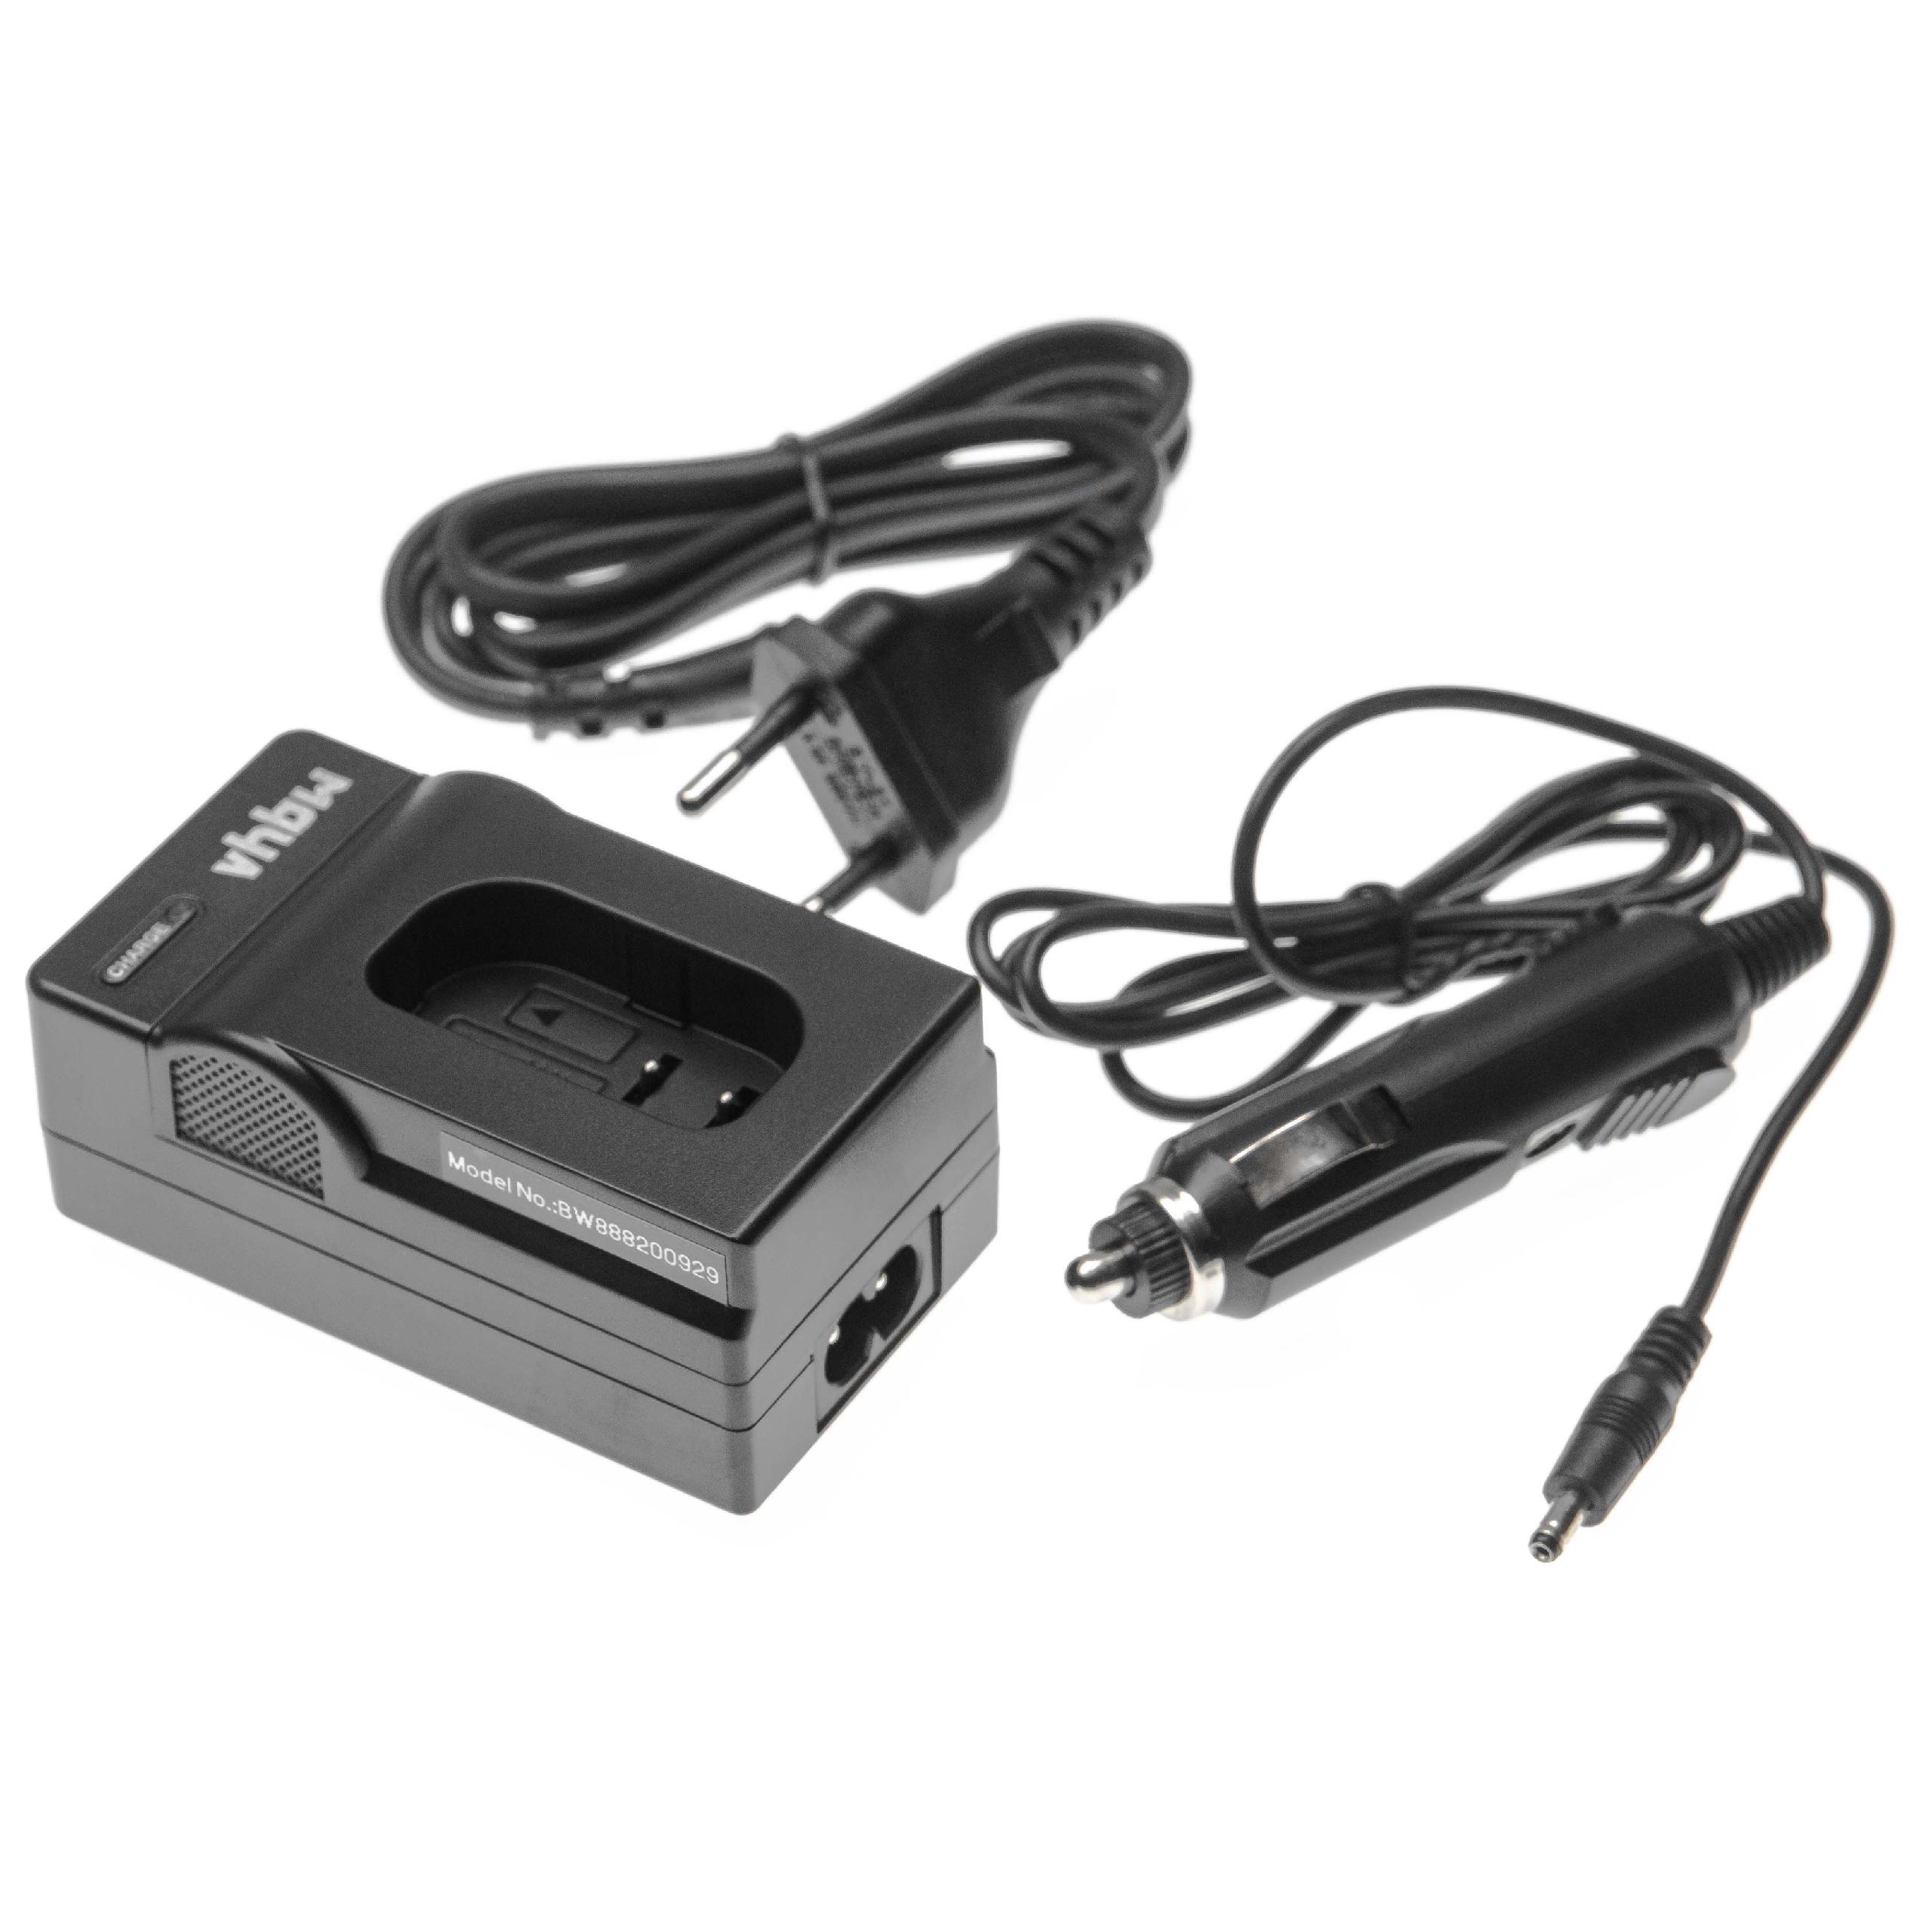 Caricabatterie + adattatore da auto per fotocamera Lumix - 0,6A 8,4V